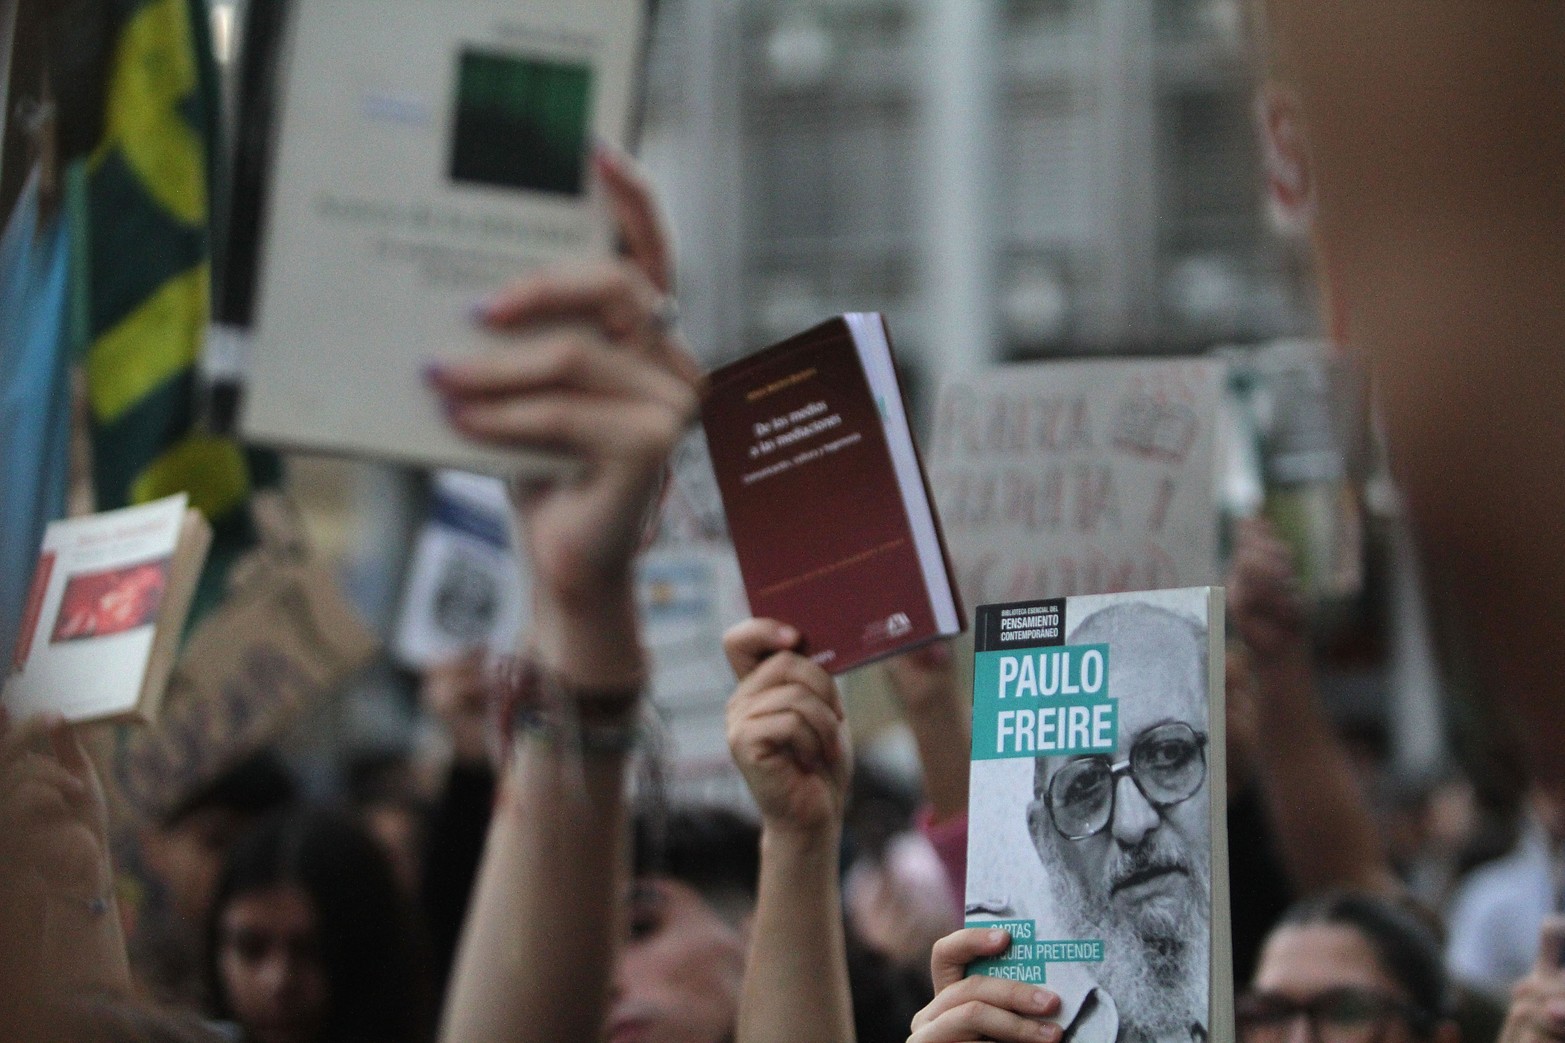 La marcha federal universitaria convocó a una multitud. La manifestación en contra del ajuste a las universidades nacionales se hizo sentir en todo el país y tuvo repercusión política. Las fotos en Santa Fe y Paraná